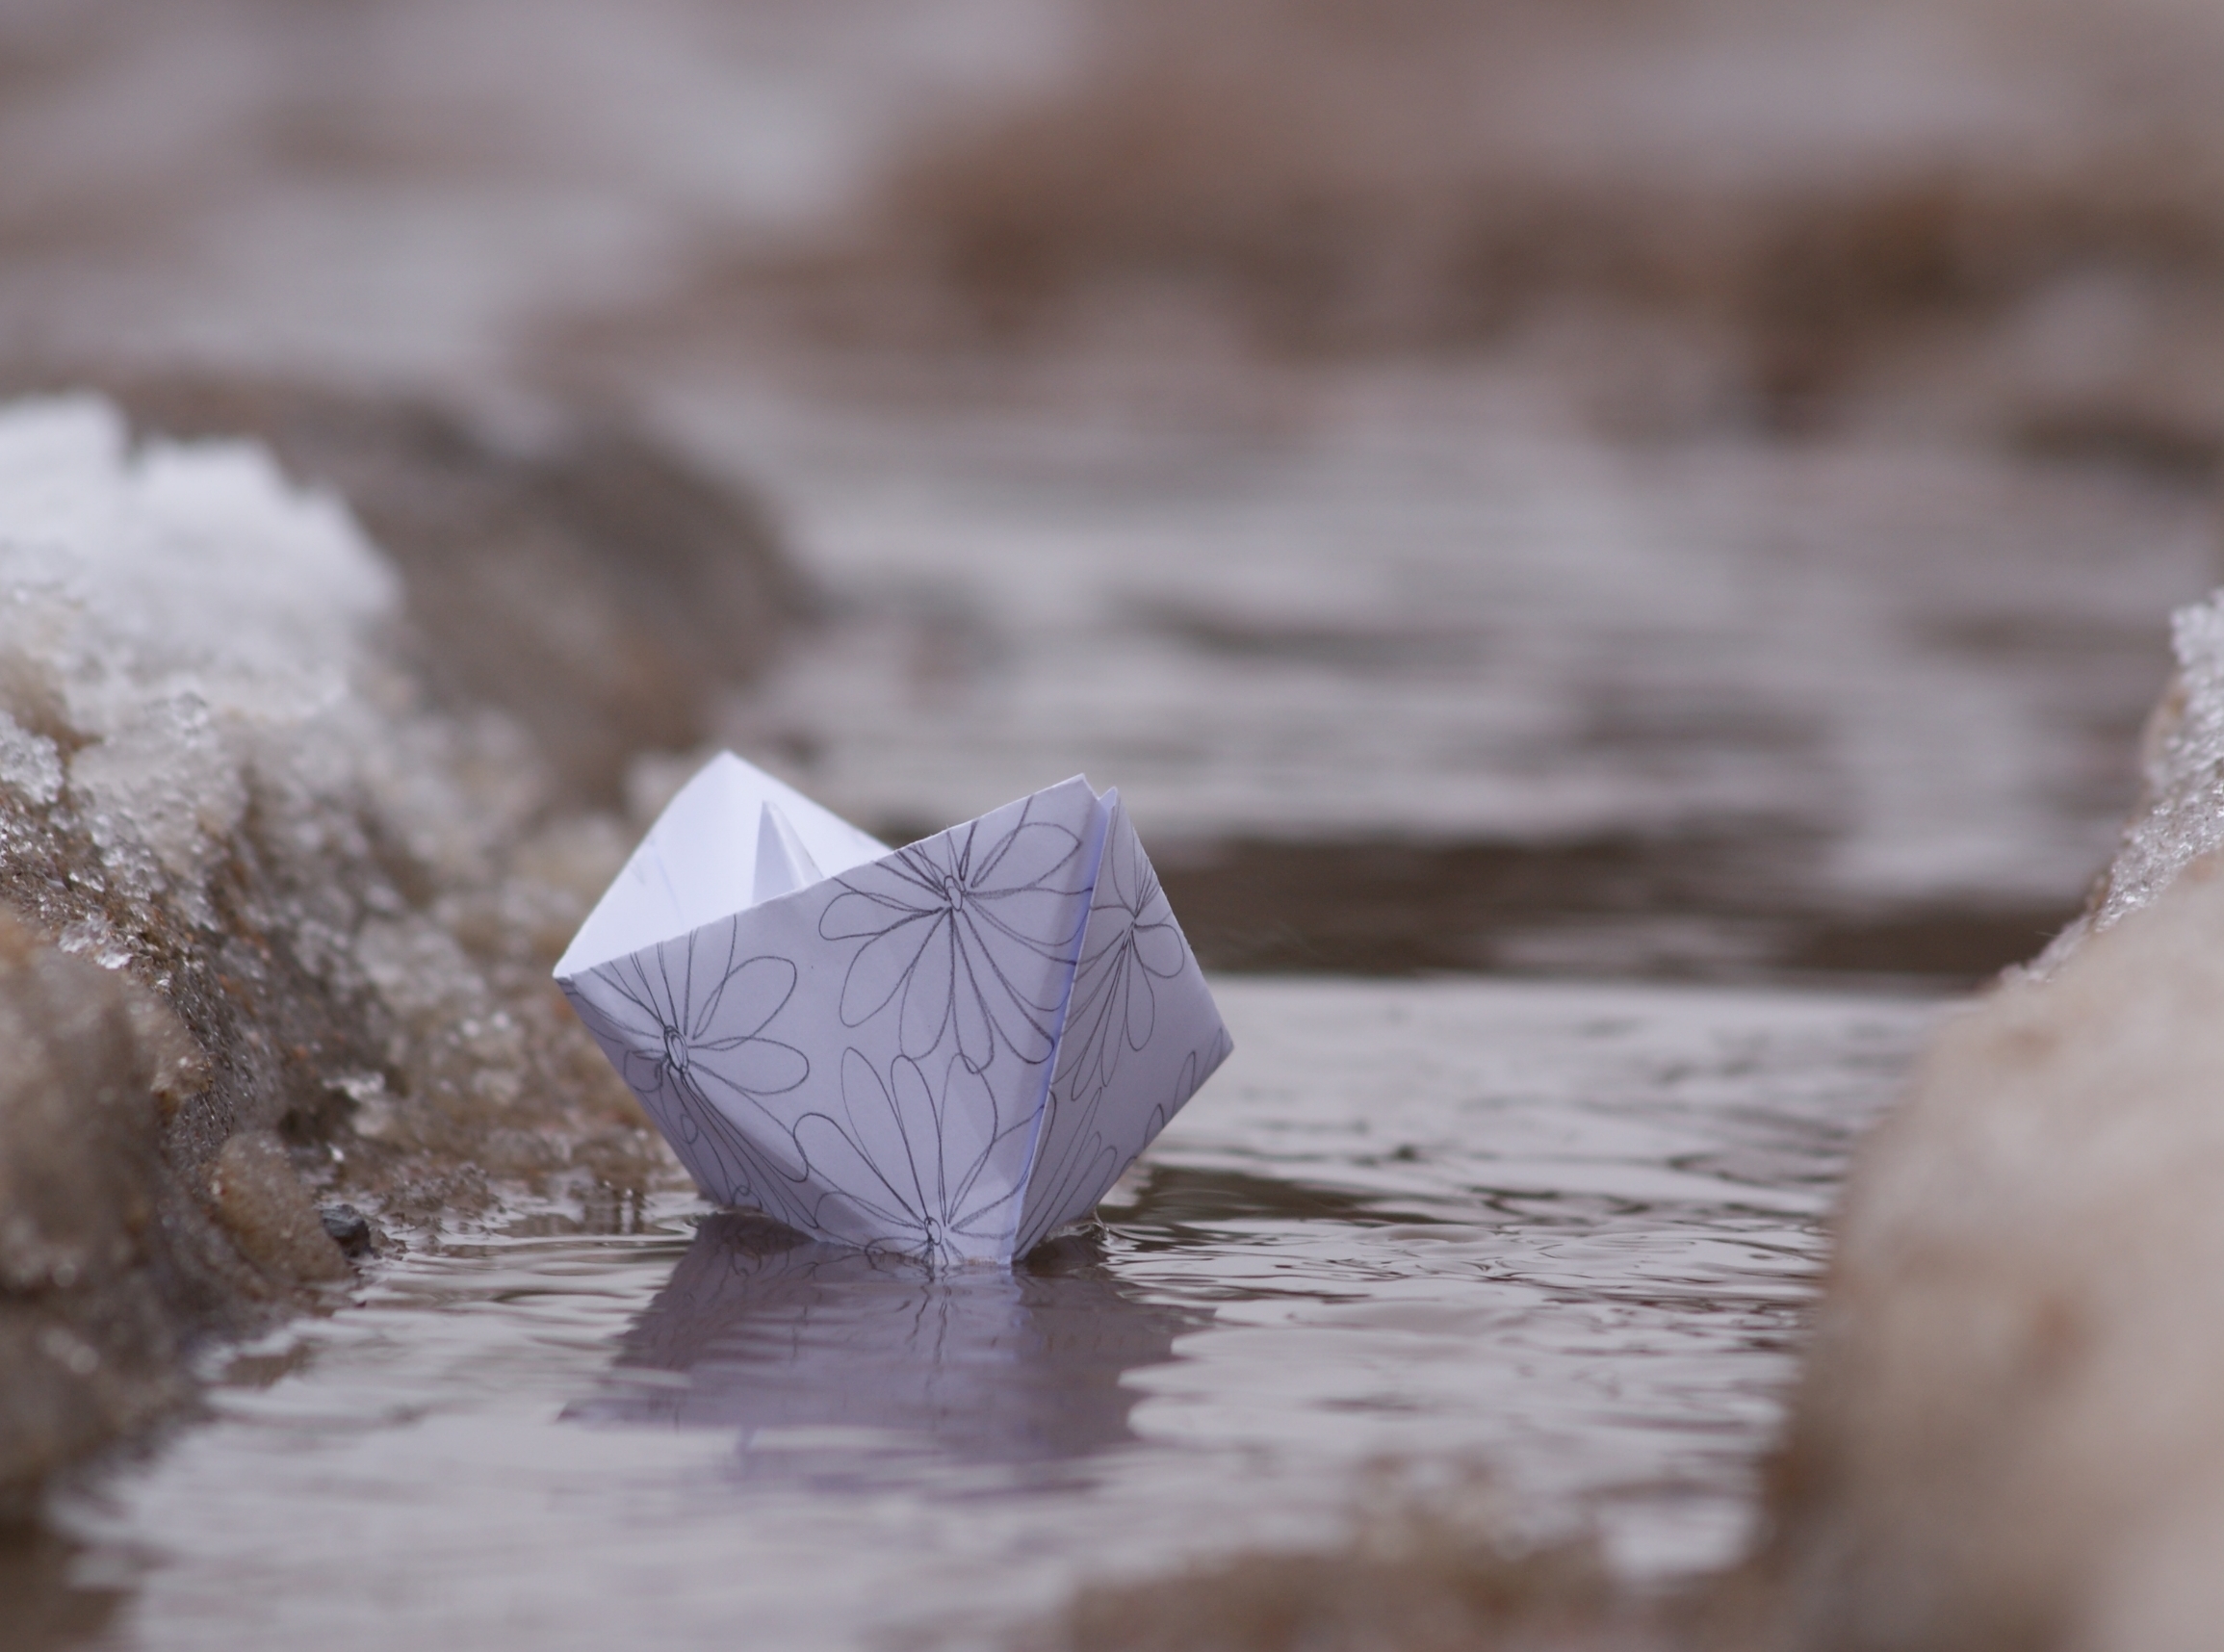 Кораблик из бумаги я по ручью пустил. Бумажный кораблик. Бумажный кораблик в ручье. Бумажный кораблик весной. Весенний бумажный кораблик.